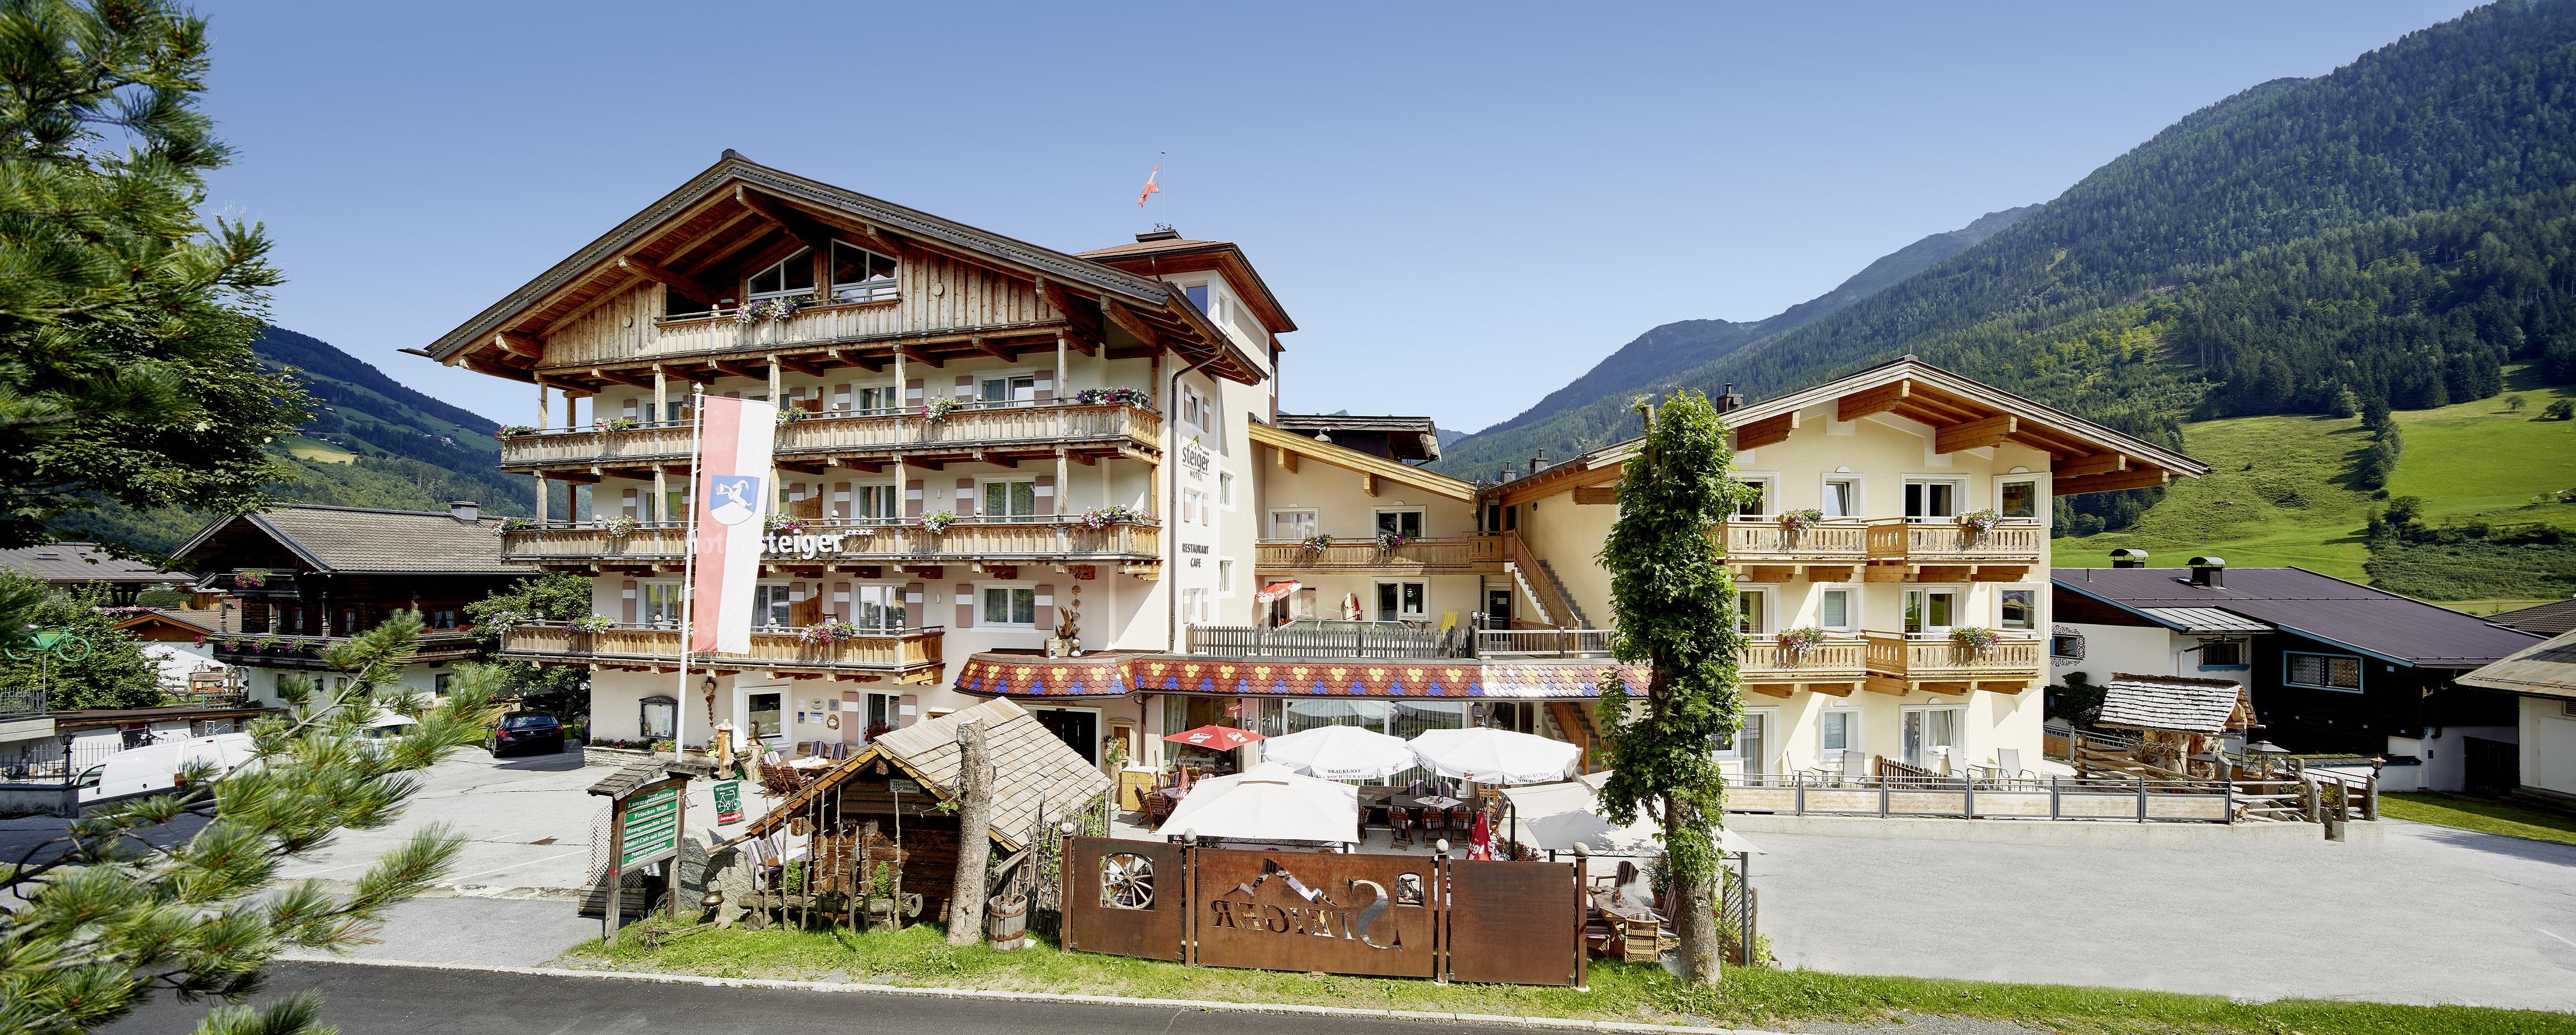 Hotel Steiger Bio-Haus, App. Nr. 401, 2 Schlafr&au Ferienwohnung  Nationalpark Hohe Tauern